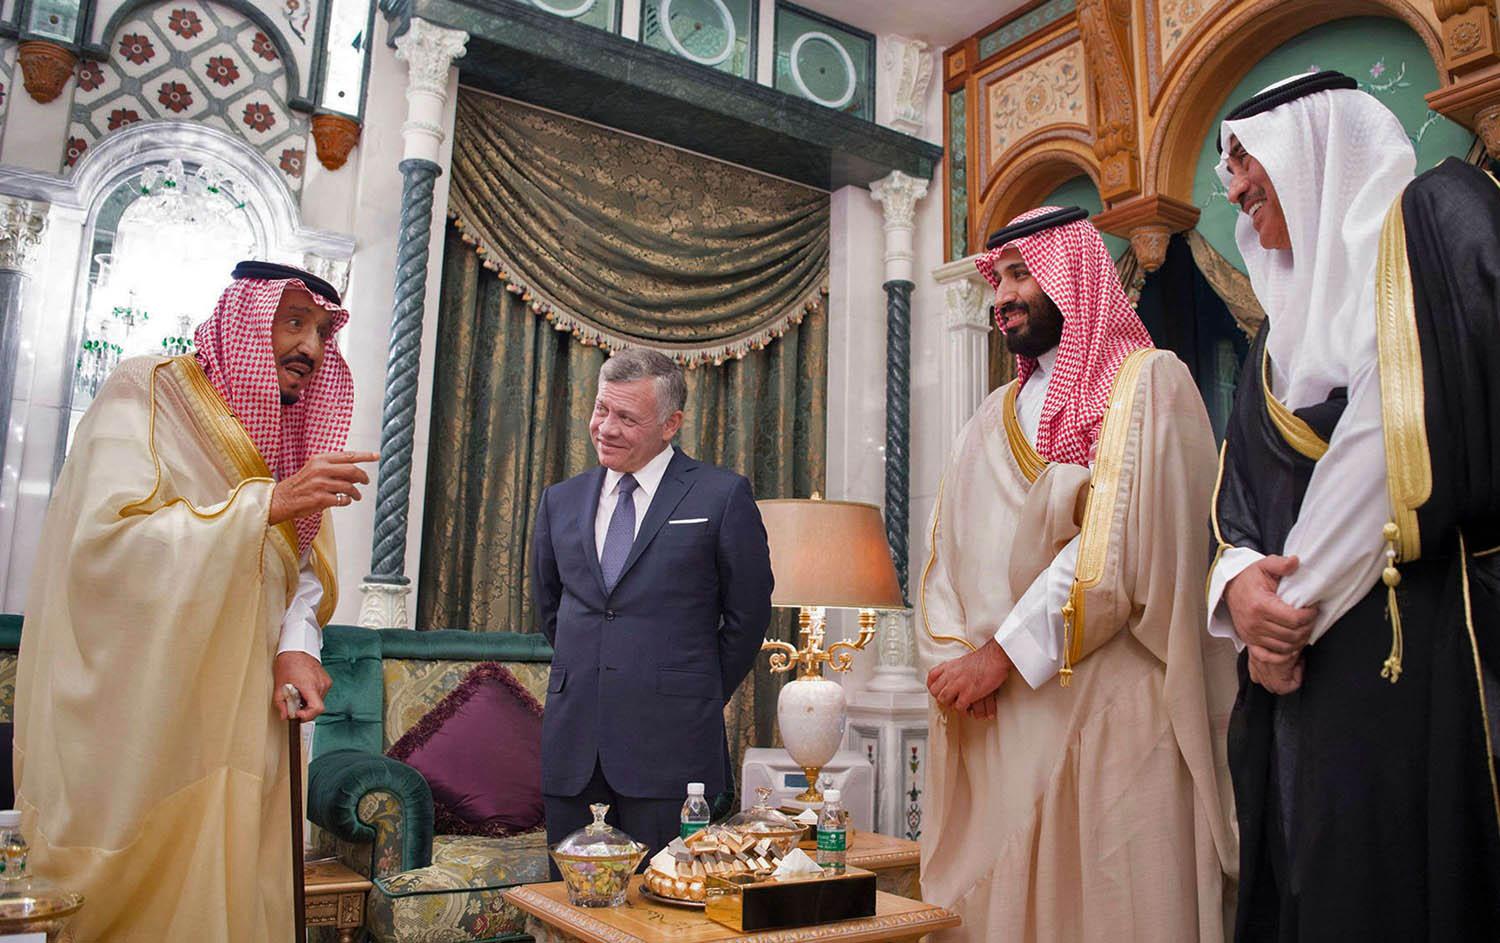 العاهل الأردني الملك عبدالله الثاني يتوسط العاهل السعودي الملك سلمان بن عبدالعزيز وولي العهد السعودي الأمير محمد بن سلمان